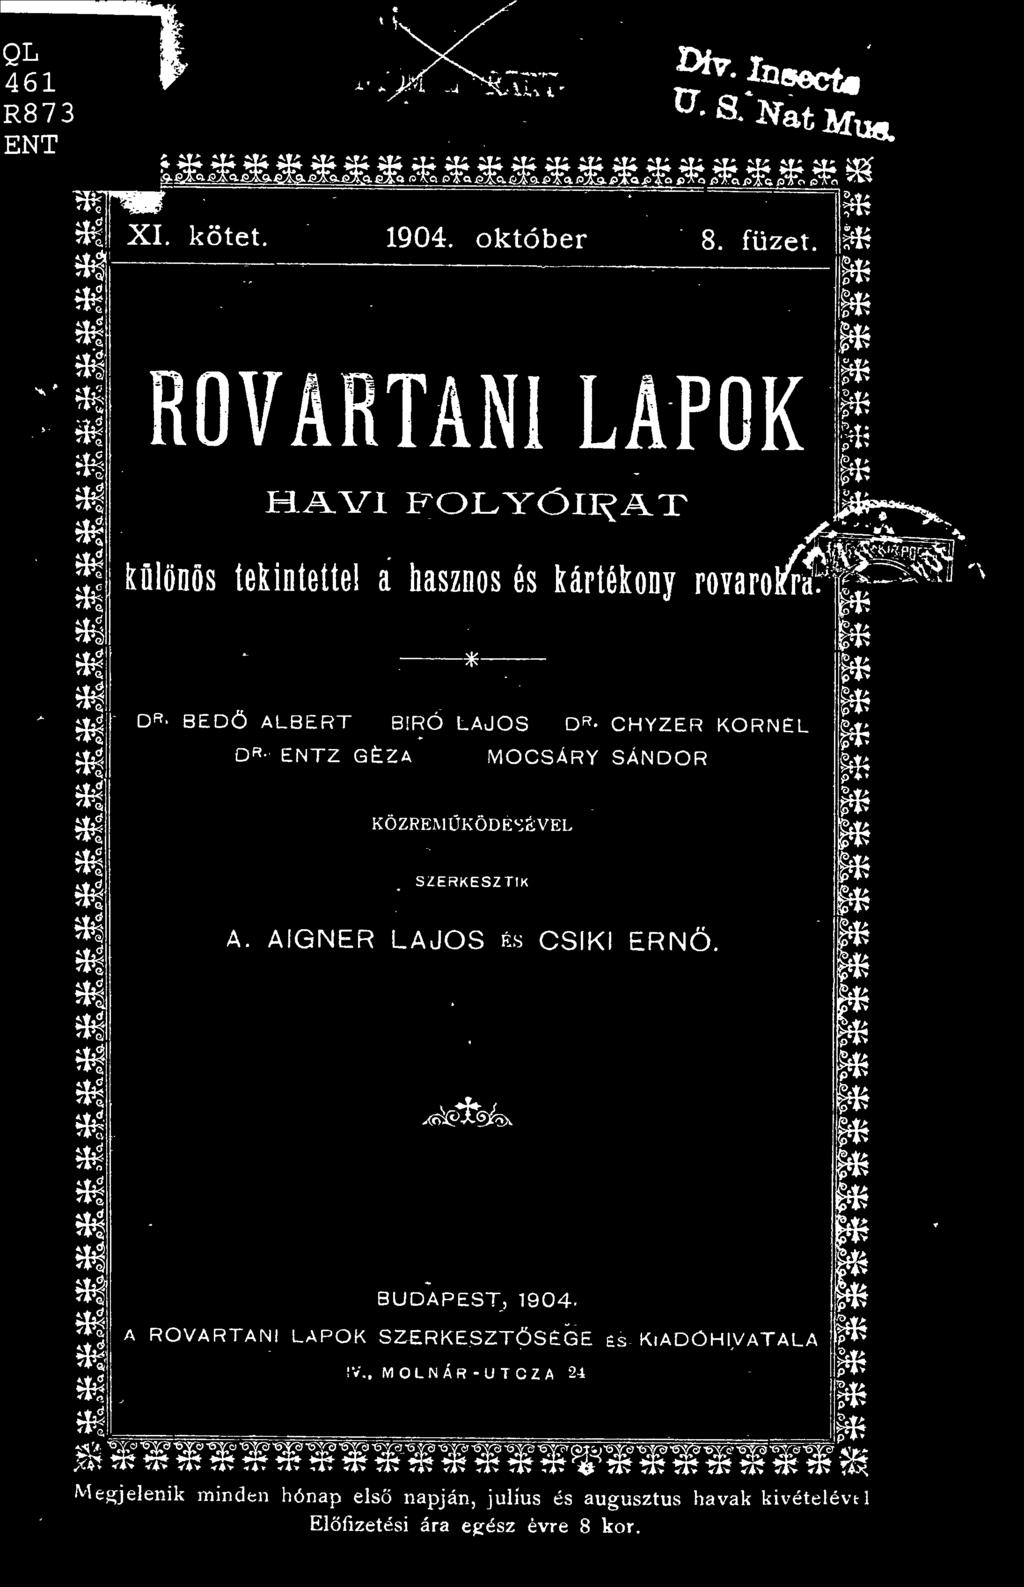 AIGNER LAJOS és CSÍKI ERN. *3@jfeh\ w BUDAPEST, 1904.